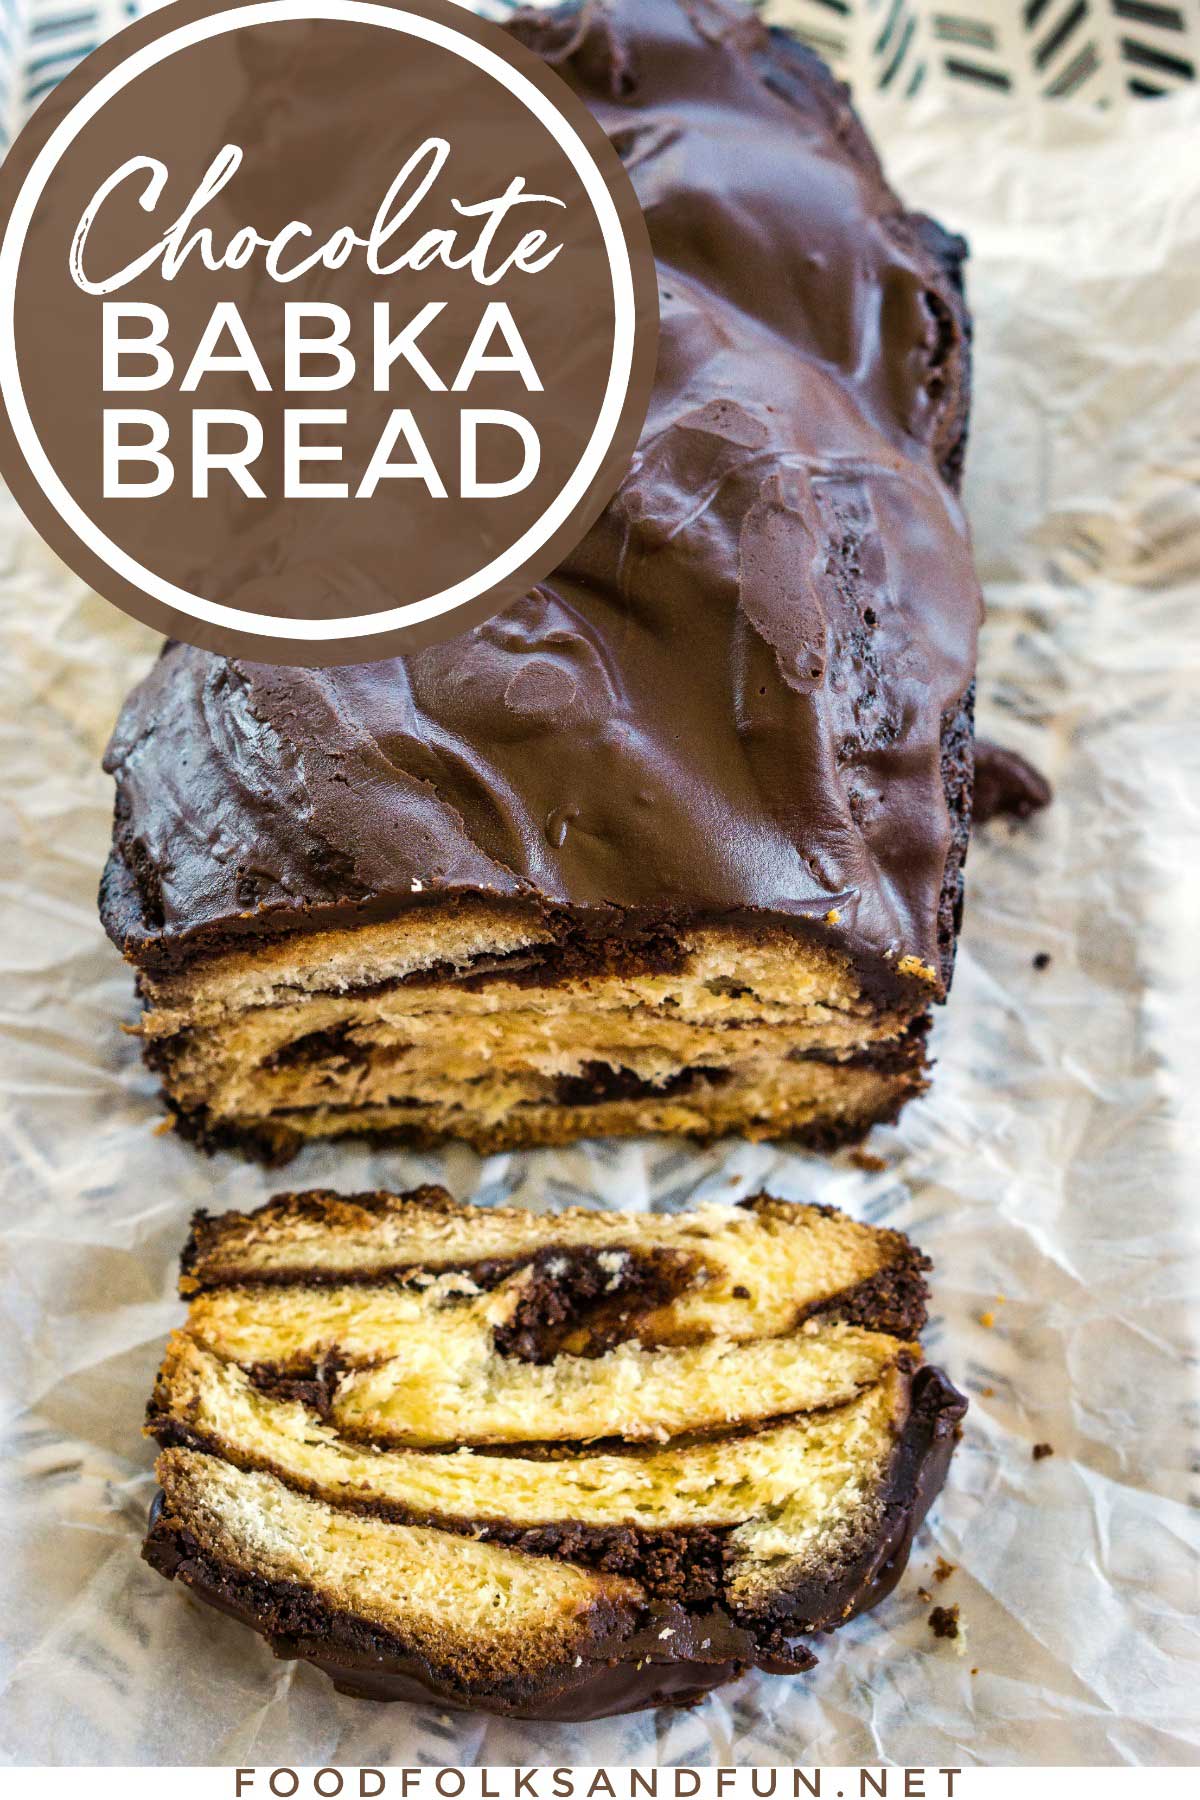 Chocolate Babka Bread with text overlay for social media